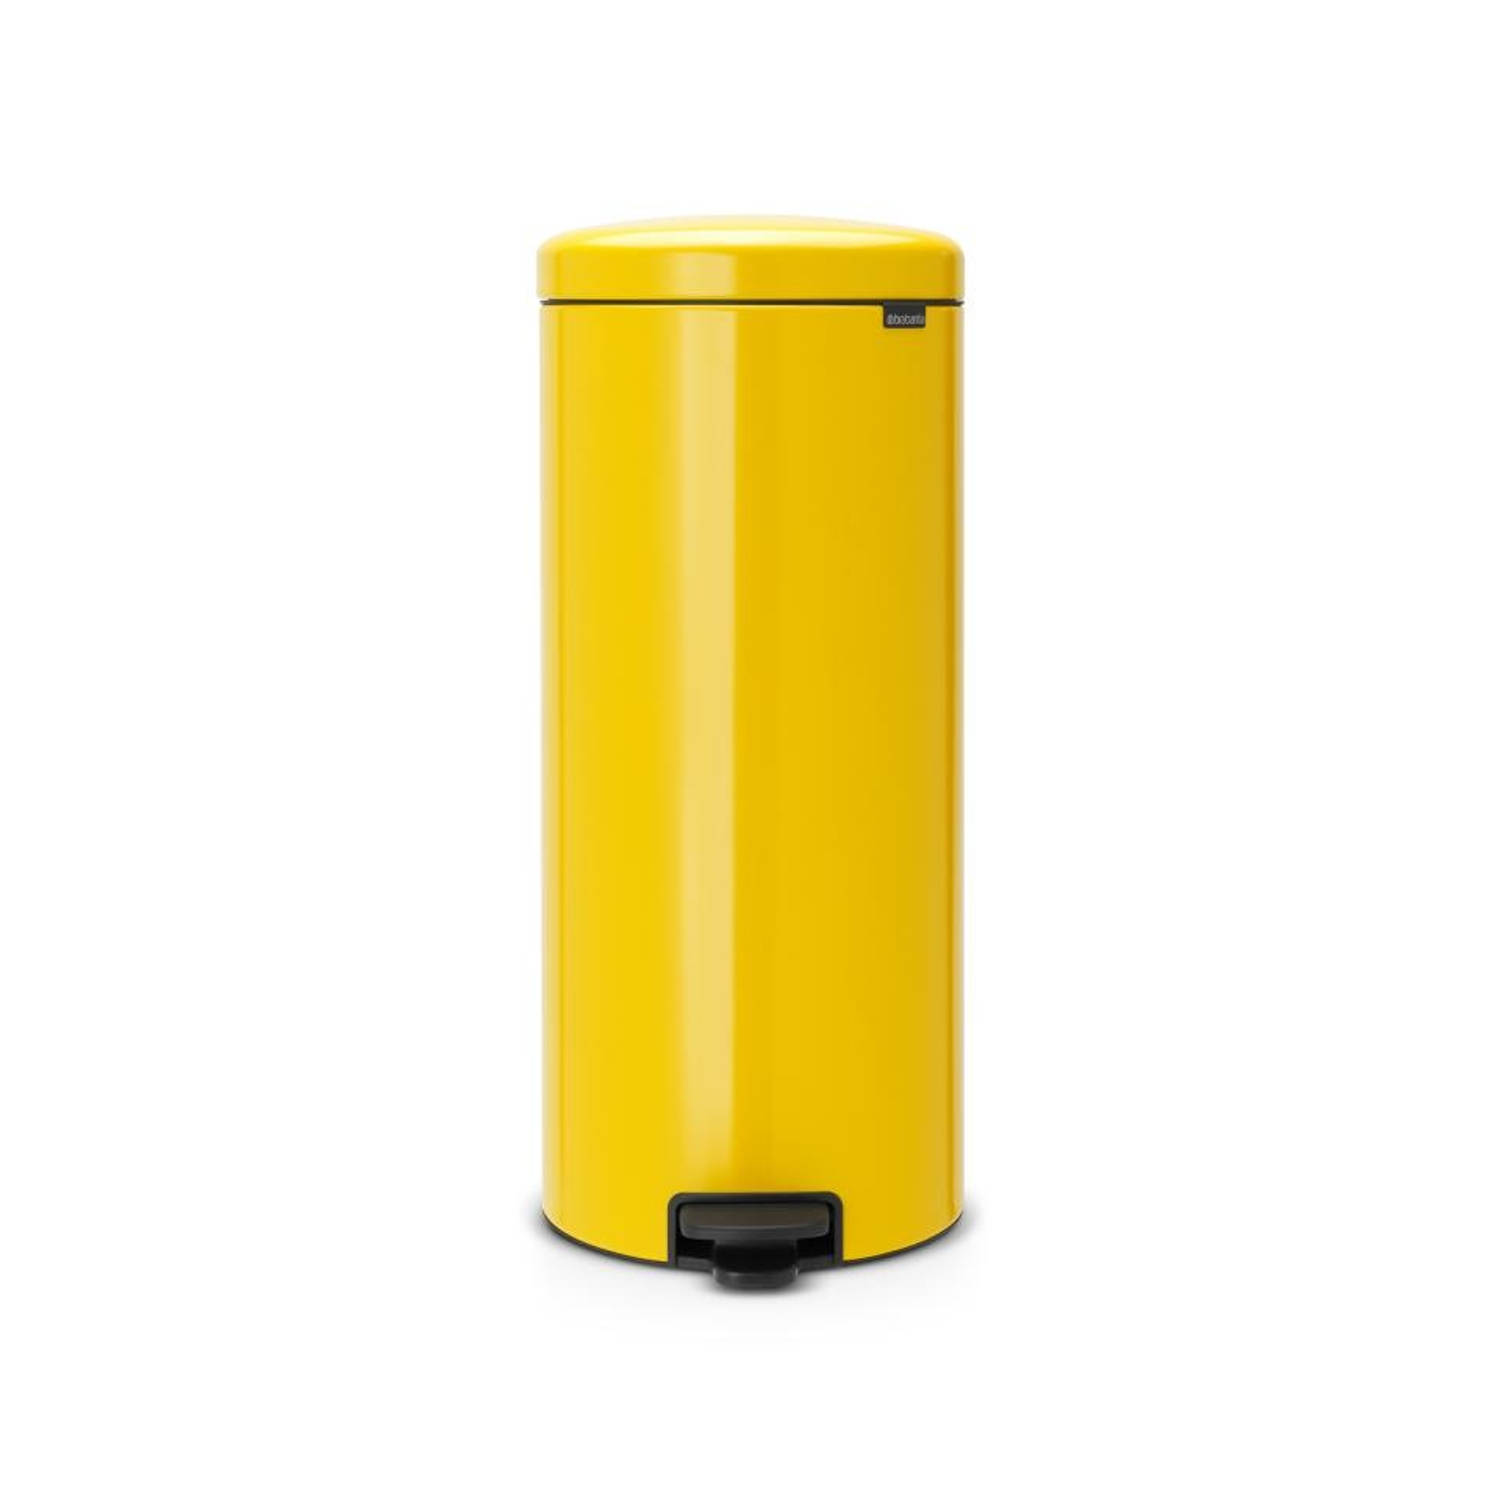 Gemeenten Tirannie Vertrek naar Brabantia newIcon prullenbak - 30 liter - geel | Blokker